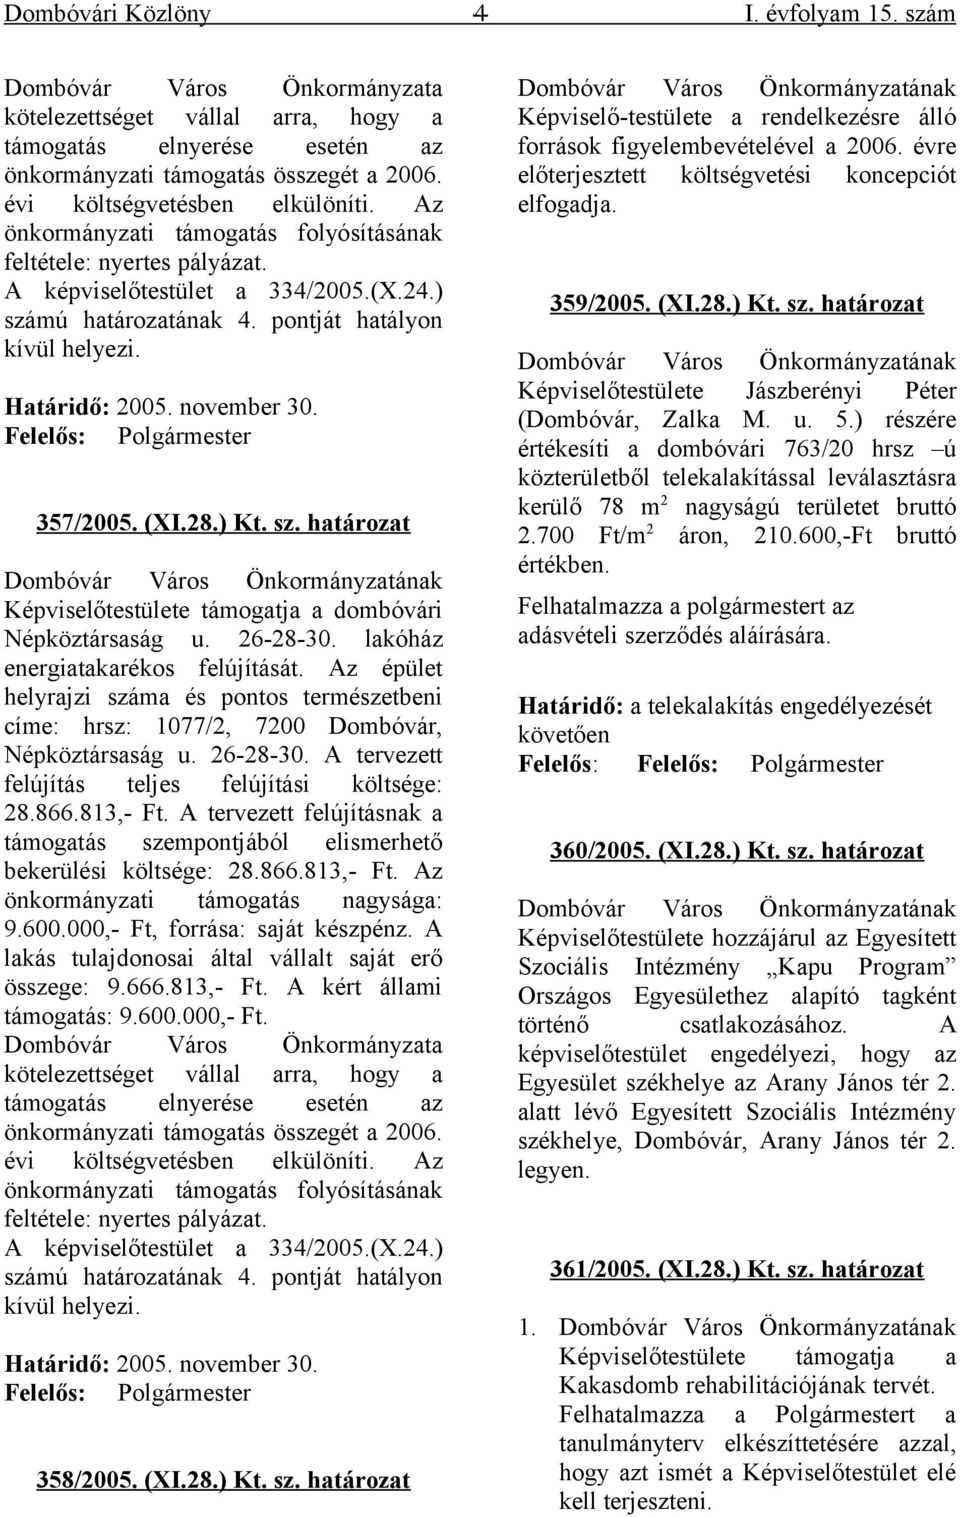 Határidő: 2005. november 30. Felelős: Polgármester 357/2005. (XI.28.) Kt. sz. határozat Dombóvár Város Önkormányzatának Képviselőtestülete támogatja a dombóvári Népköztársaság u. 26-28-30.